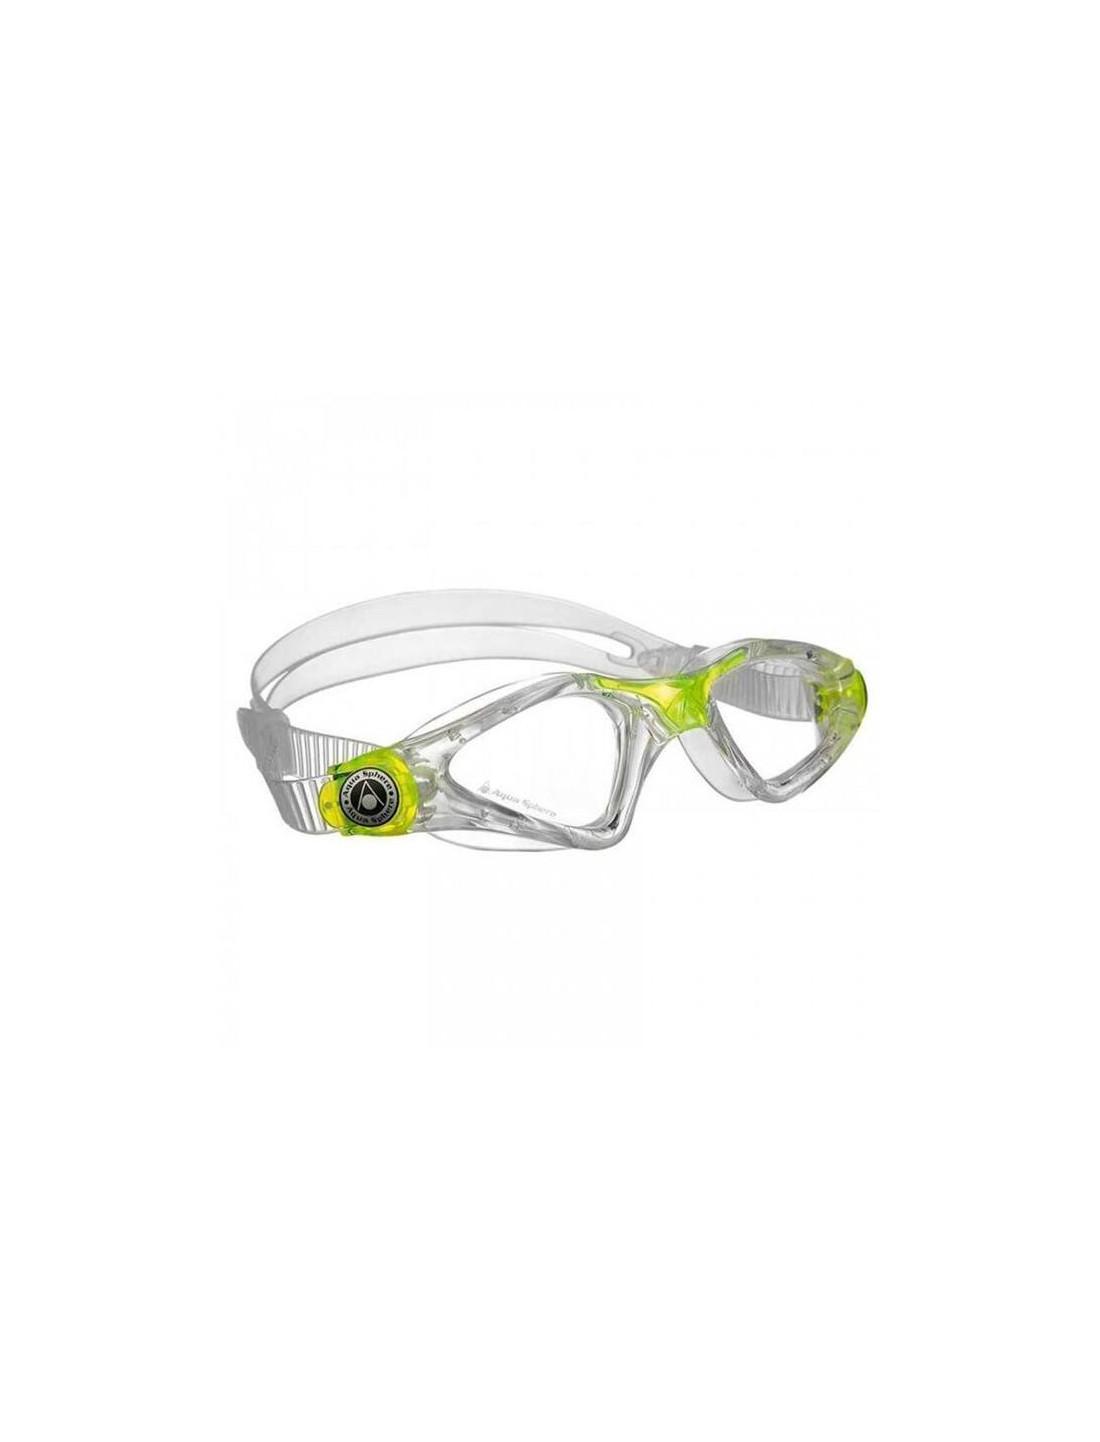 Gafas de natación KAYENNE- Trasparente/amarillo. Aqua Sphere OUTLET